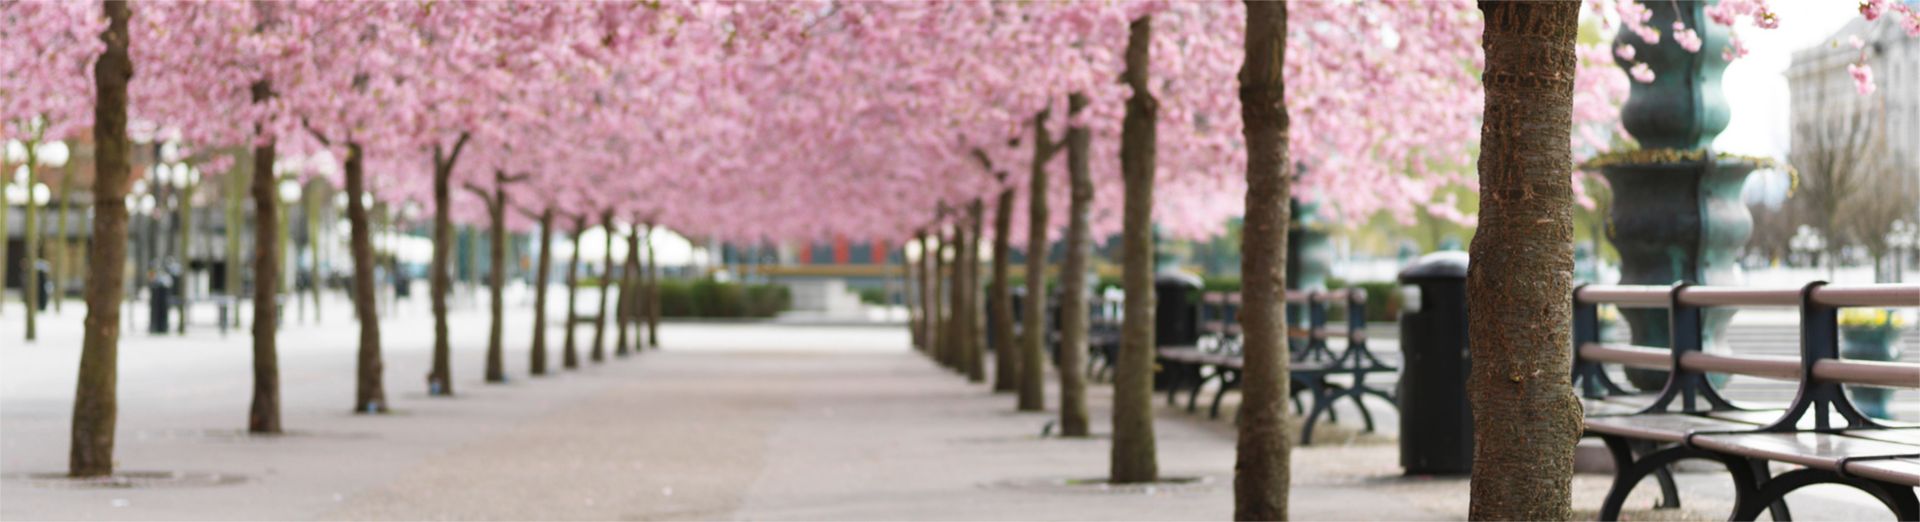 地元の公園に立つ桜の木々